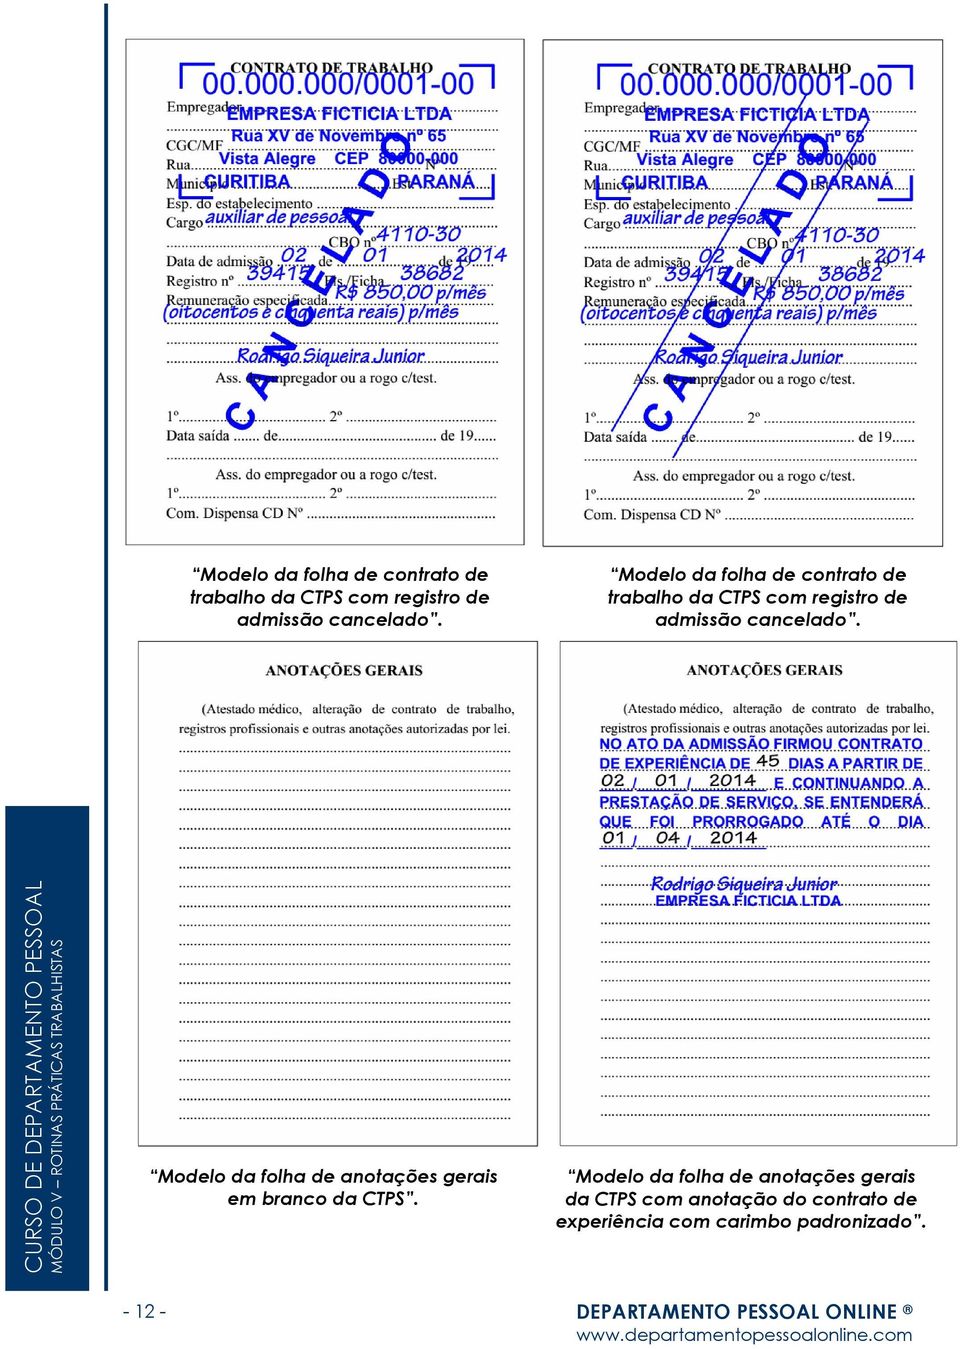 Modelo da folha de anotações gerais da CTPS com anotação do contrato de experiência